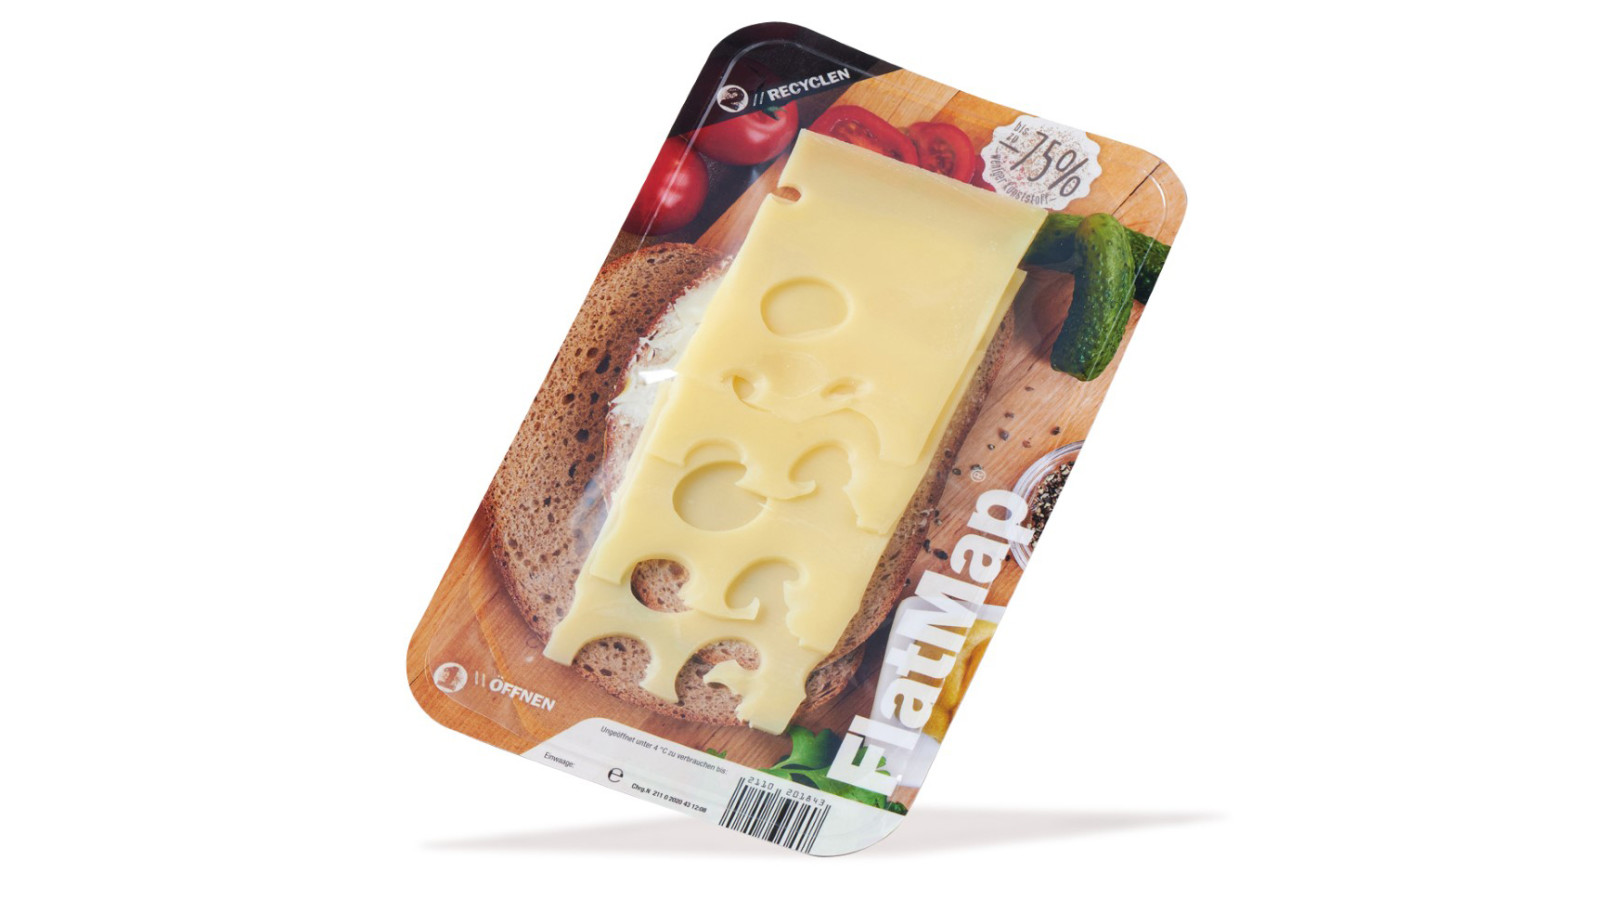 FlatMap fra Nemco er den perfekte løsning til at fremhæve produktet i køledisken. Vi har et bredt udvalg af emballage til ost- og mejeri, hvoraf flere af vores skin pack produkter er genanvendelige eller plastreduceret.